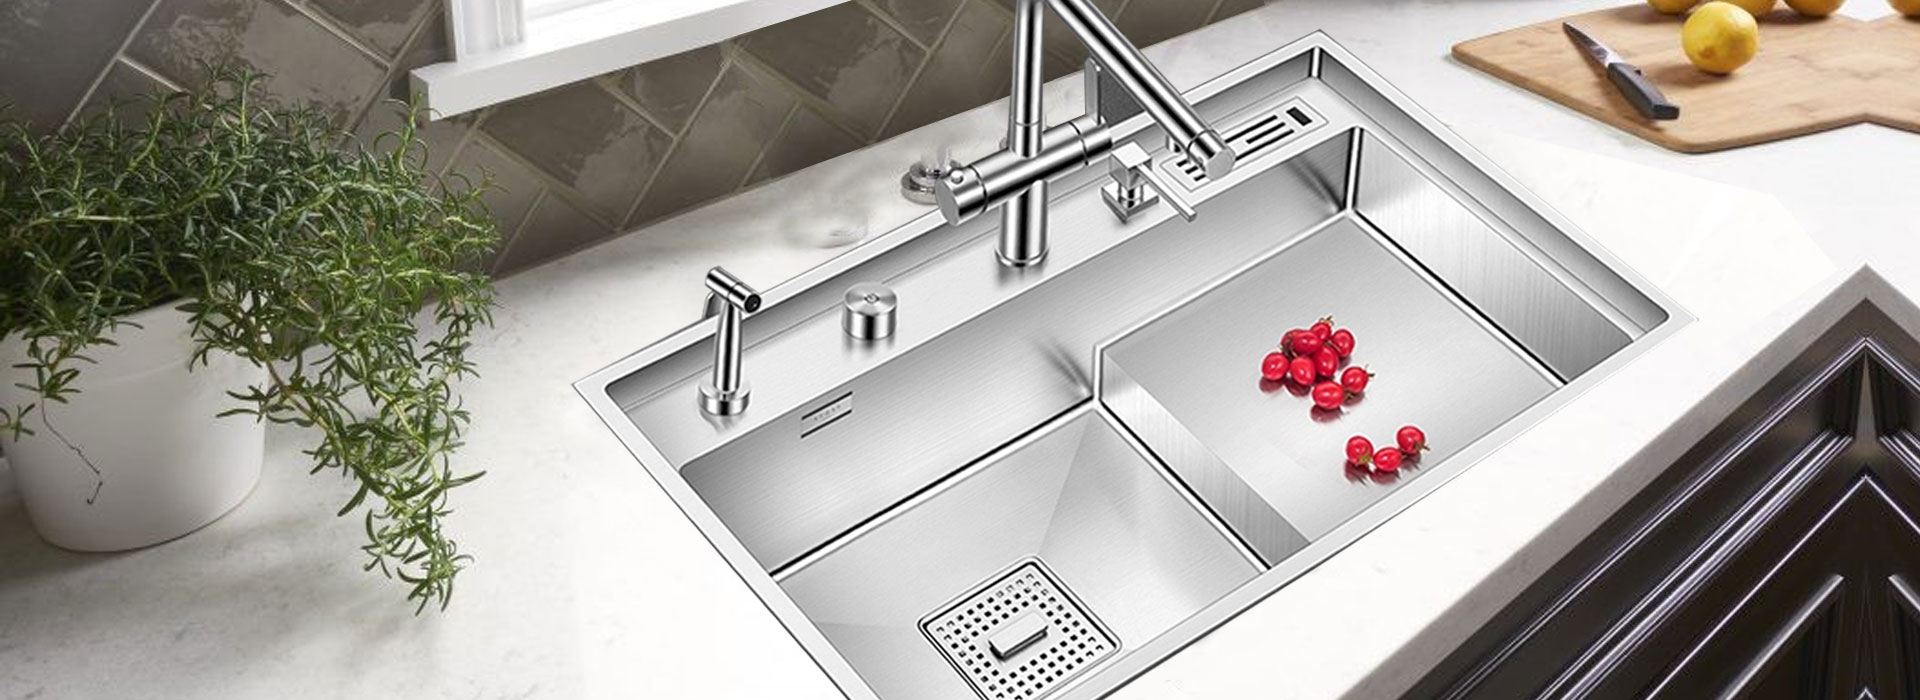 ss kitchen sink manufacturers in delhi